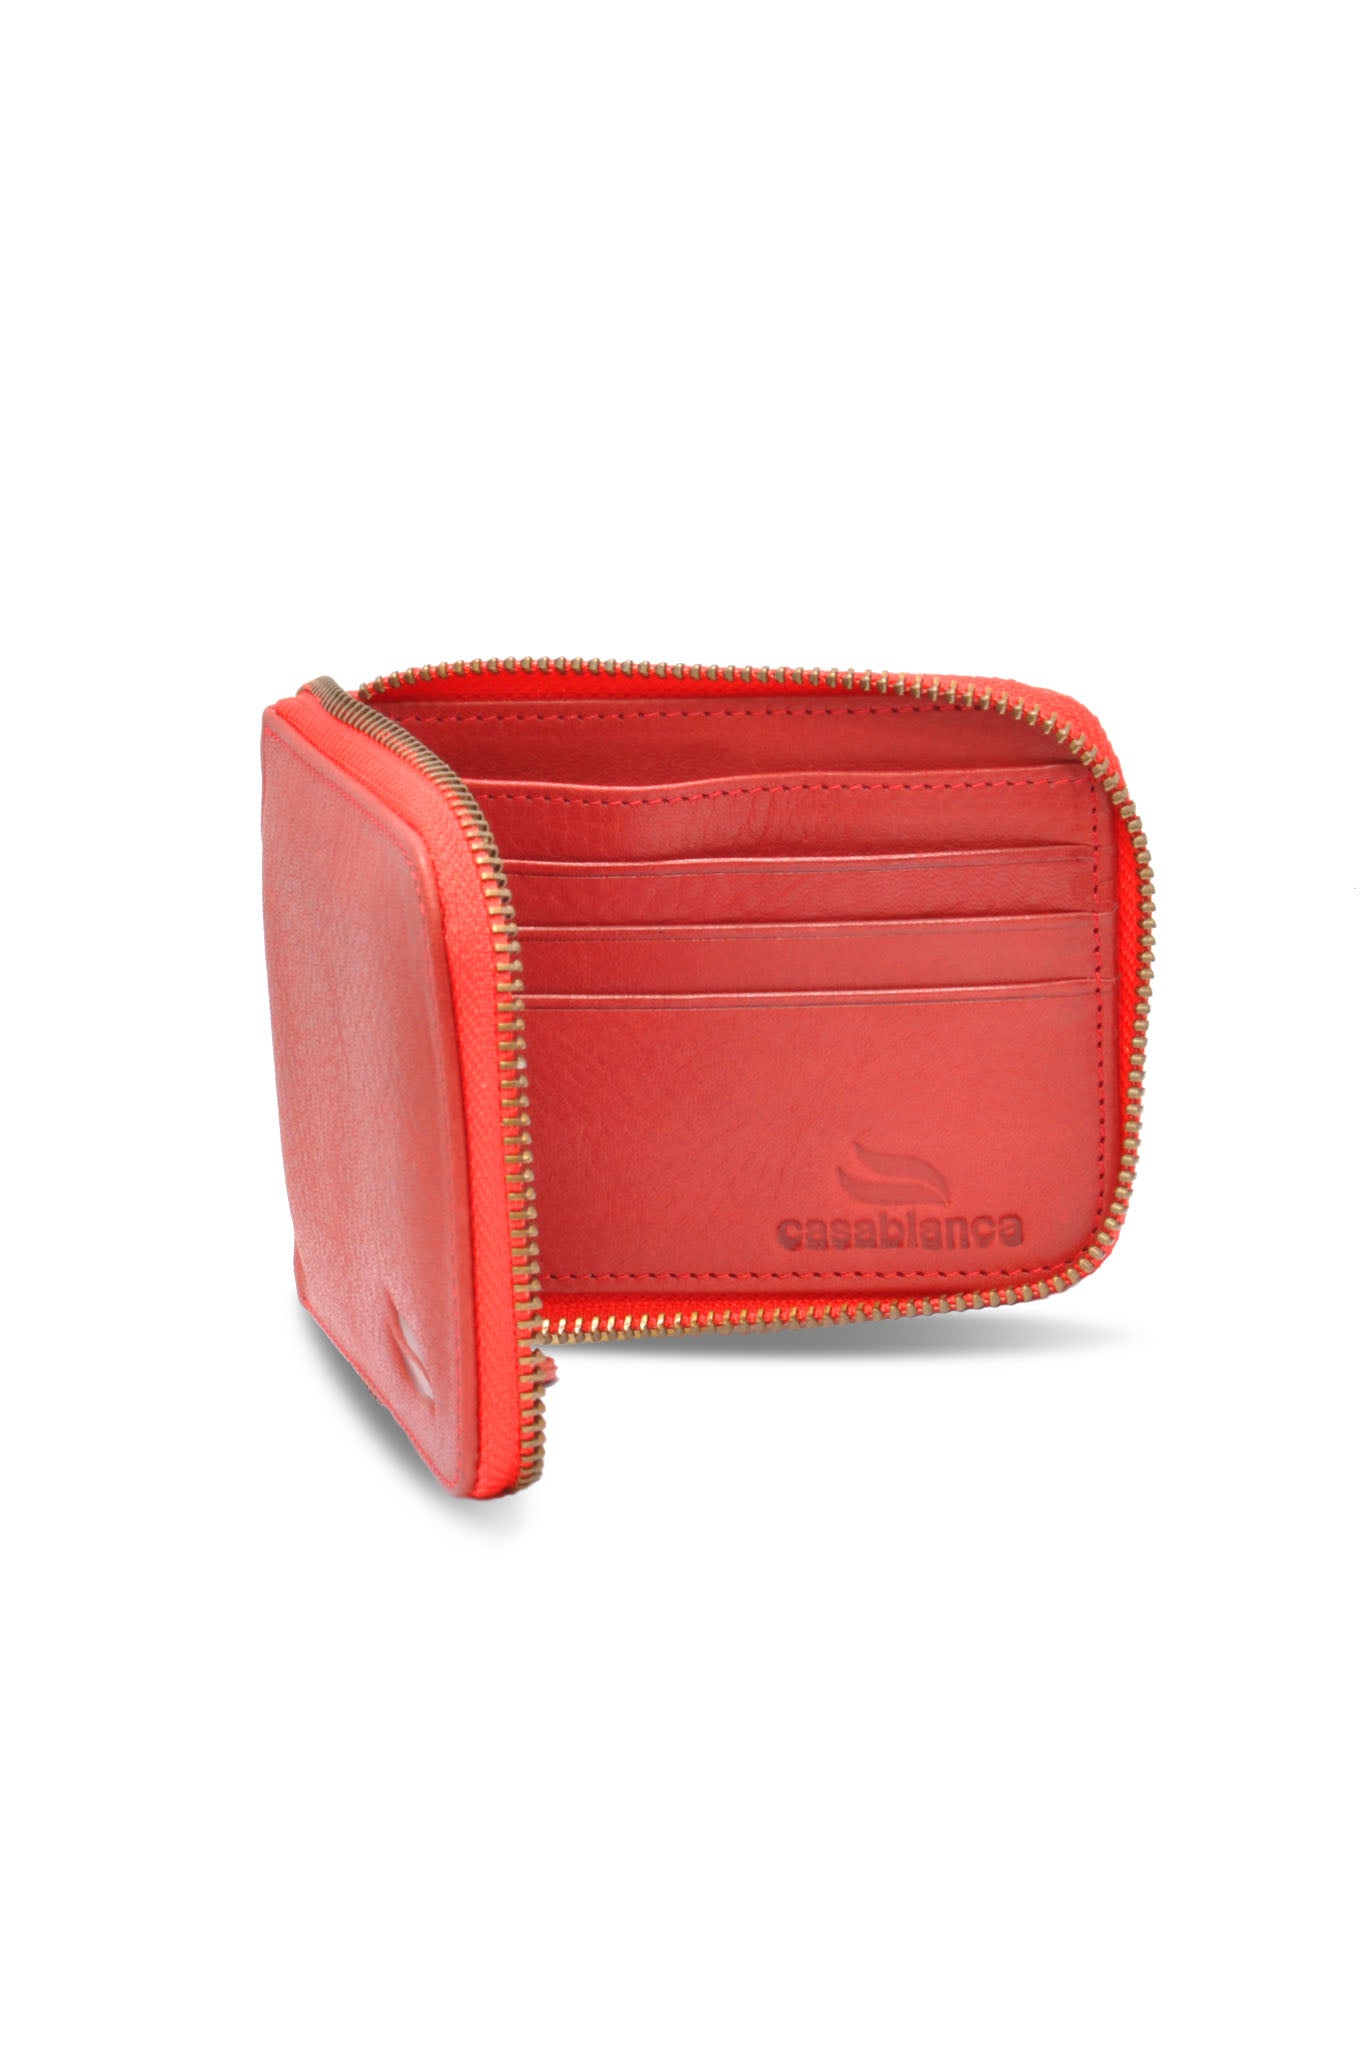 Zipper Wallet - Red